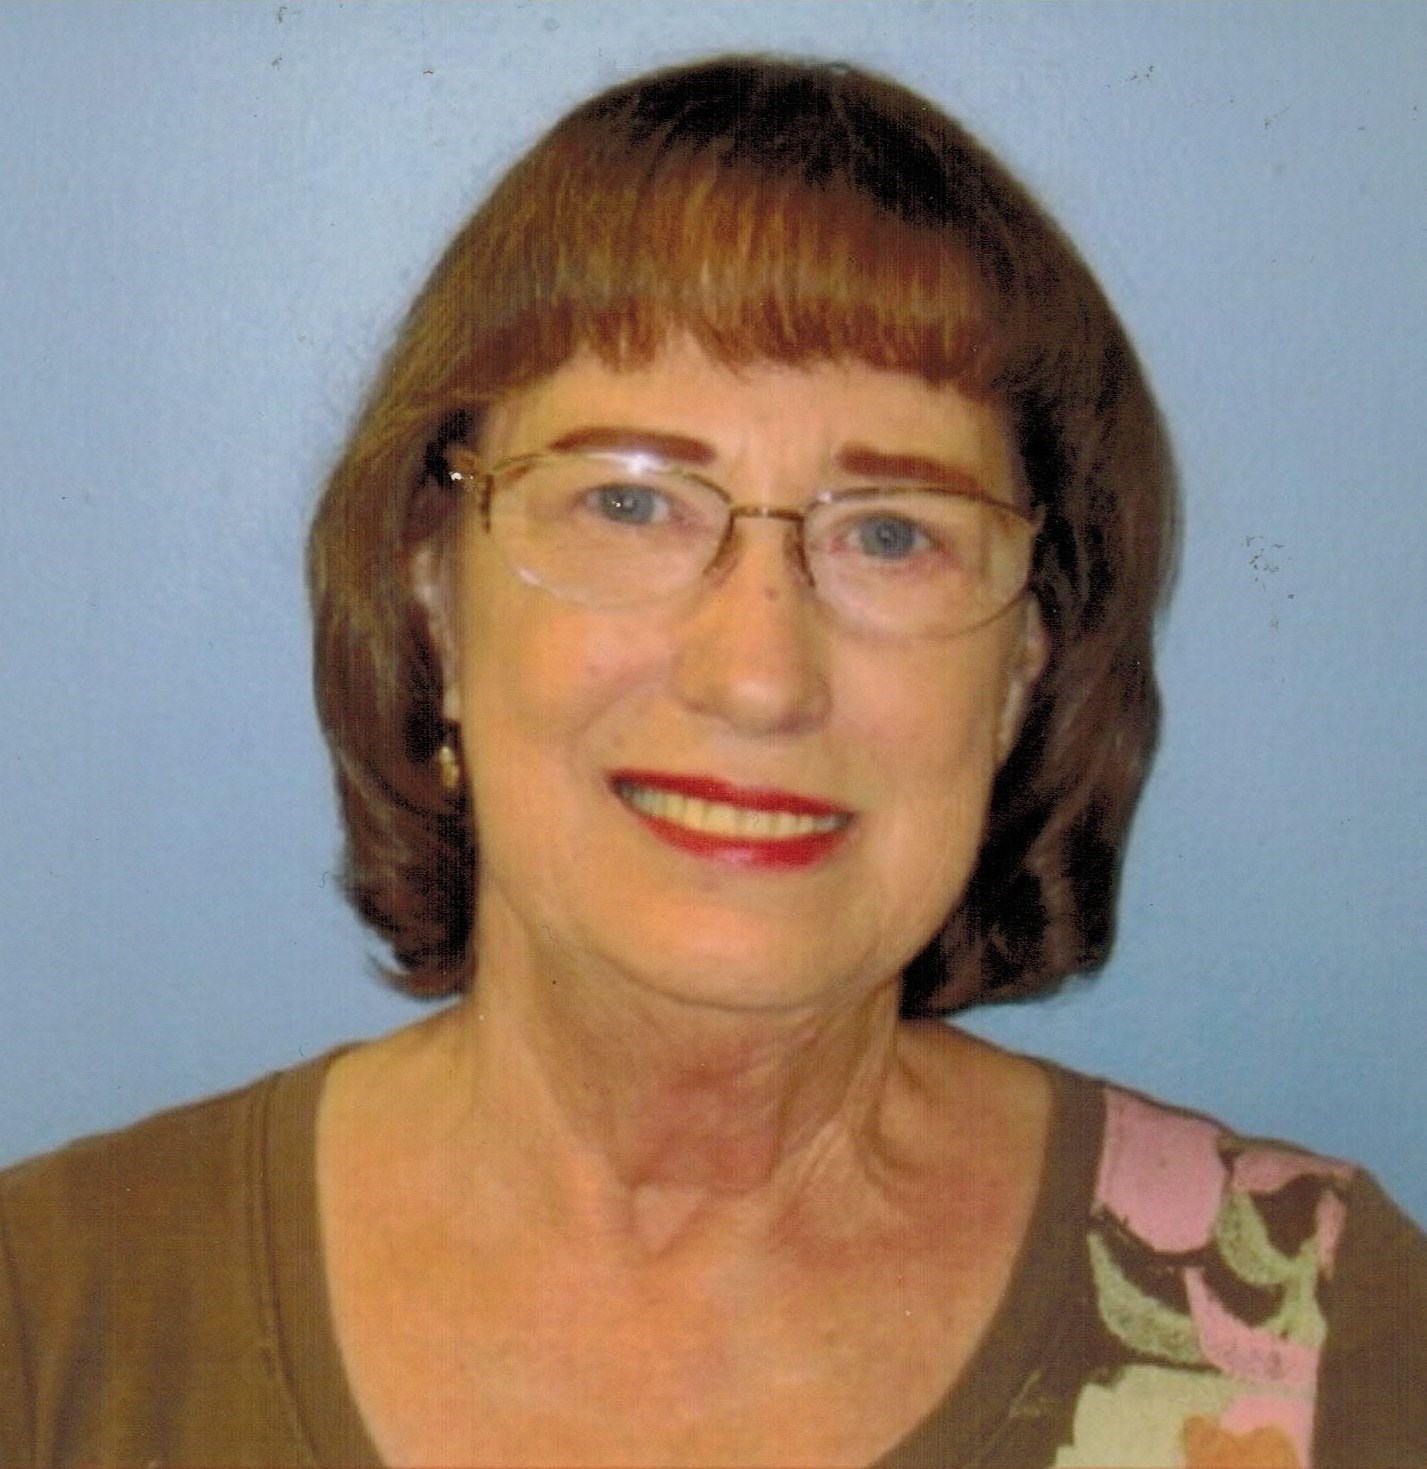 Linda Hoffman